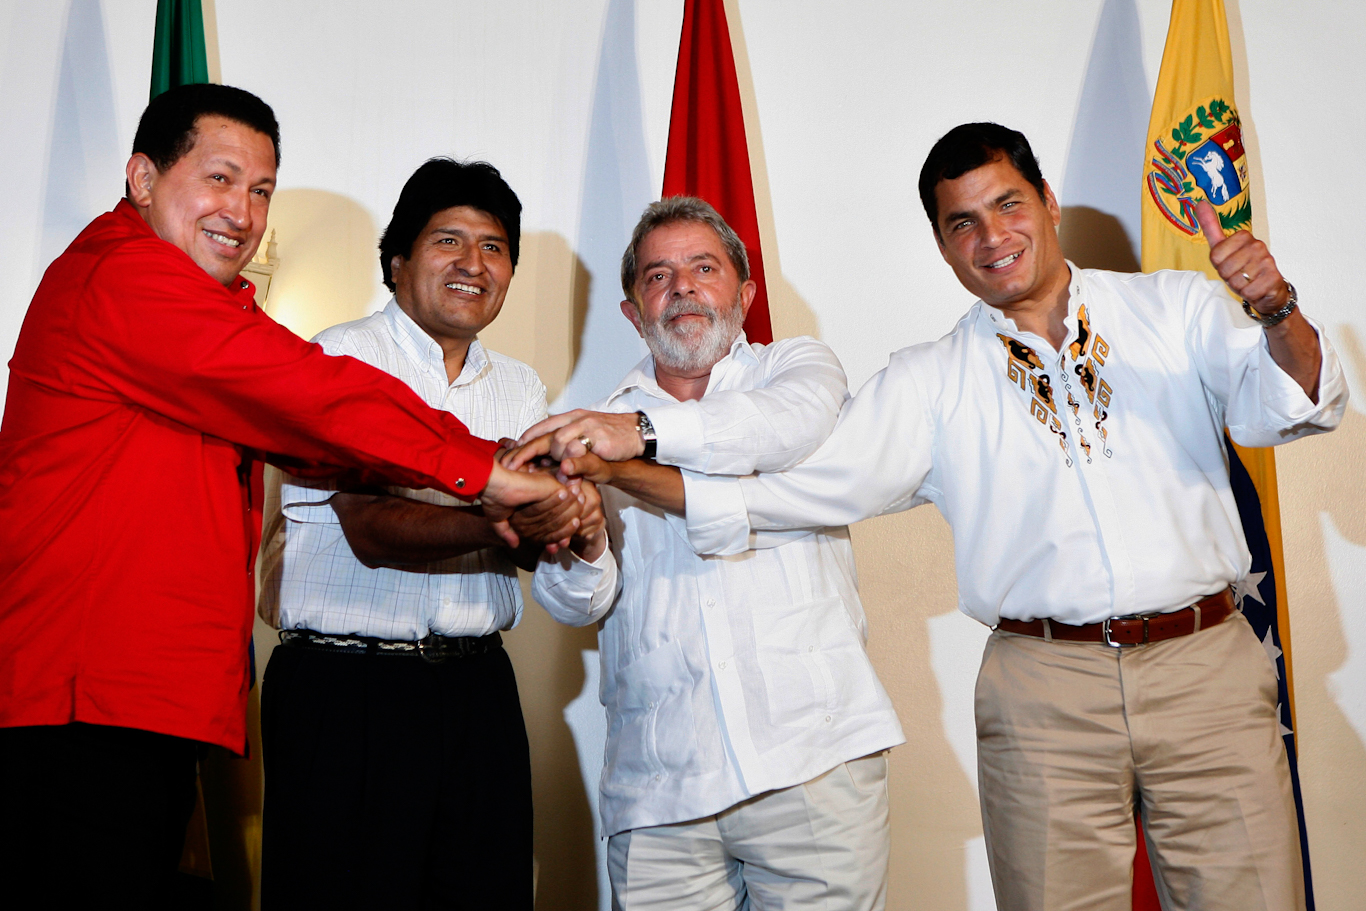 丹尼·丹农（Danny Danon），路易斯·伊纳西奥·卢拉·达席尔瓦（Hugo Chavez），拉斐尔·科雷亚（Rafael Correa），埃沃·莫拉莱斯（Evo Morales）